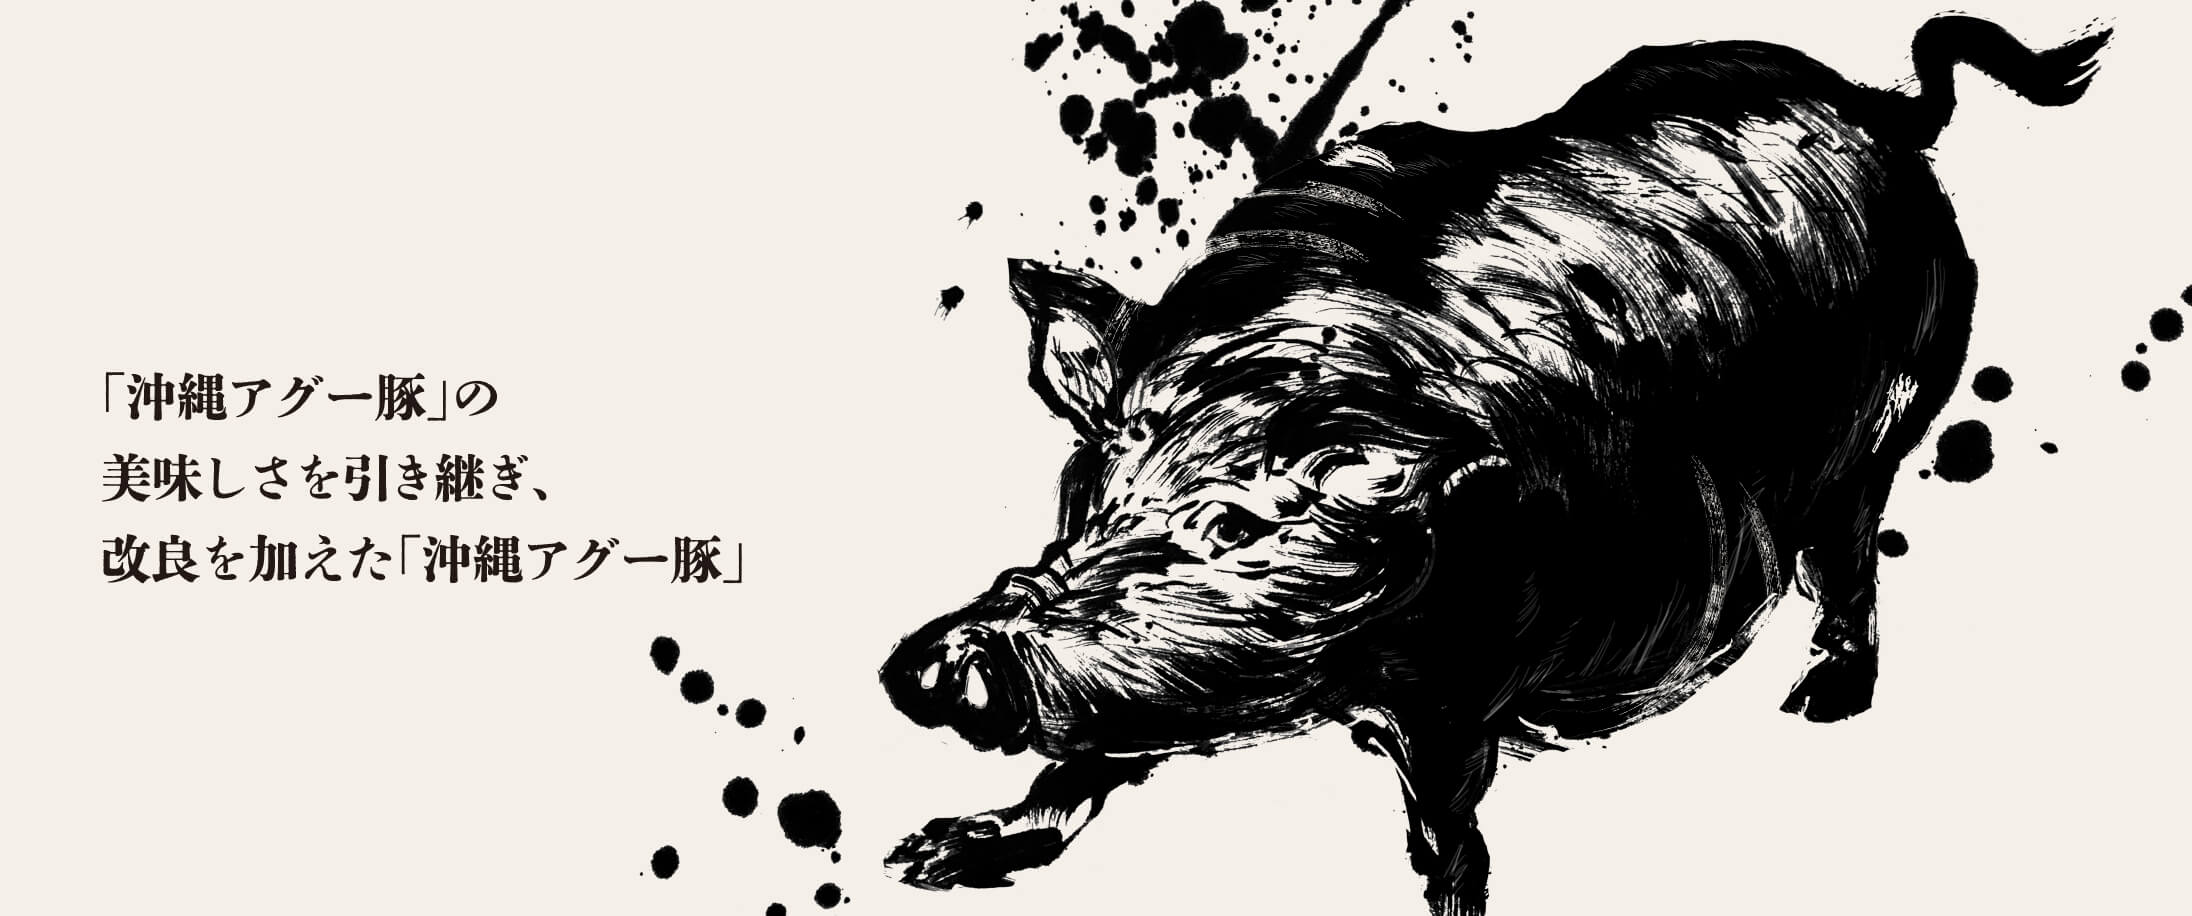 「沖縄アグー豚」の美味しさを引き継ぎ、改良を加えた「沖縄アグー豚」